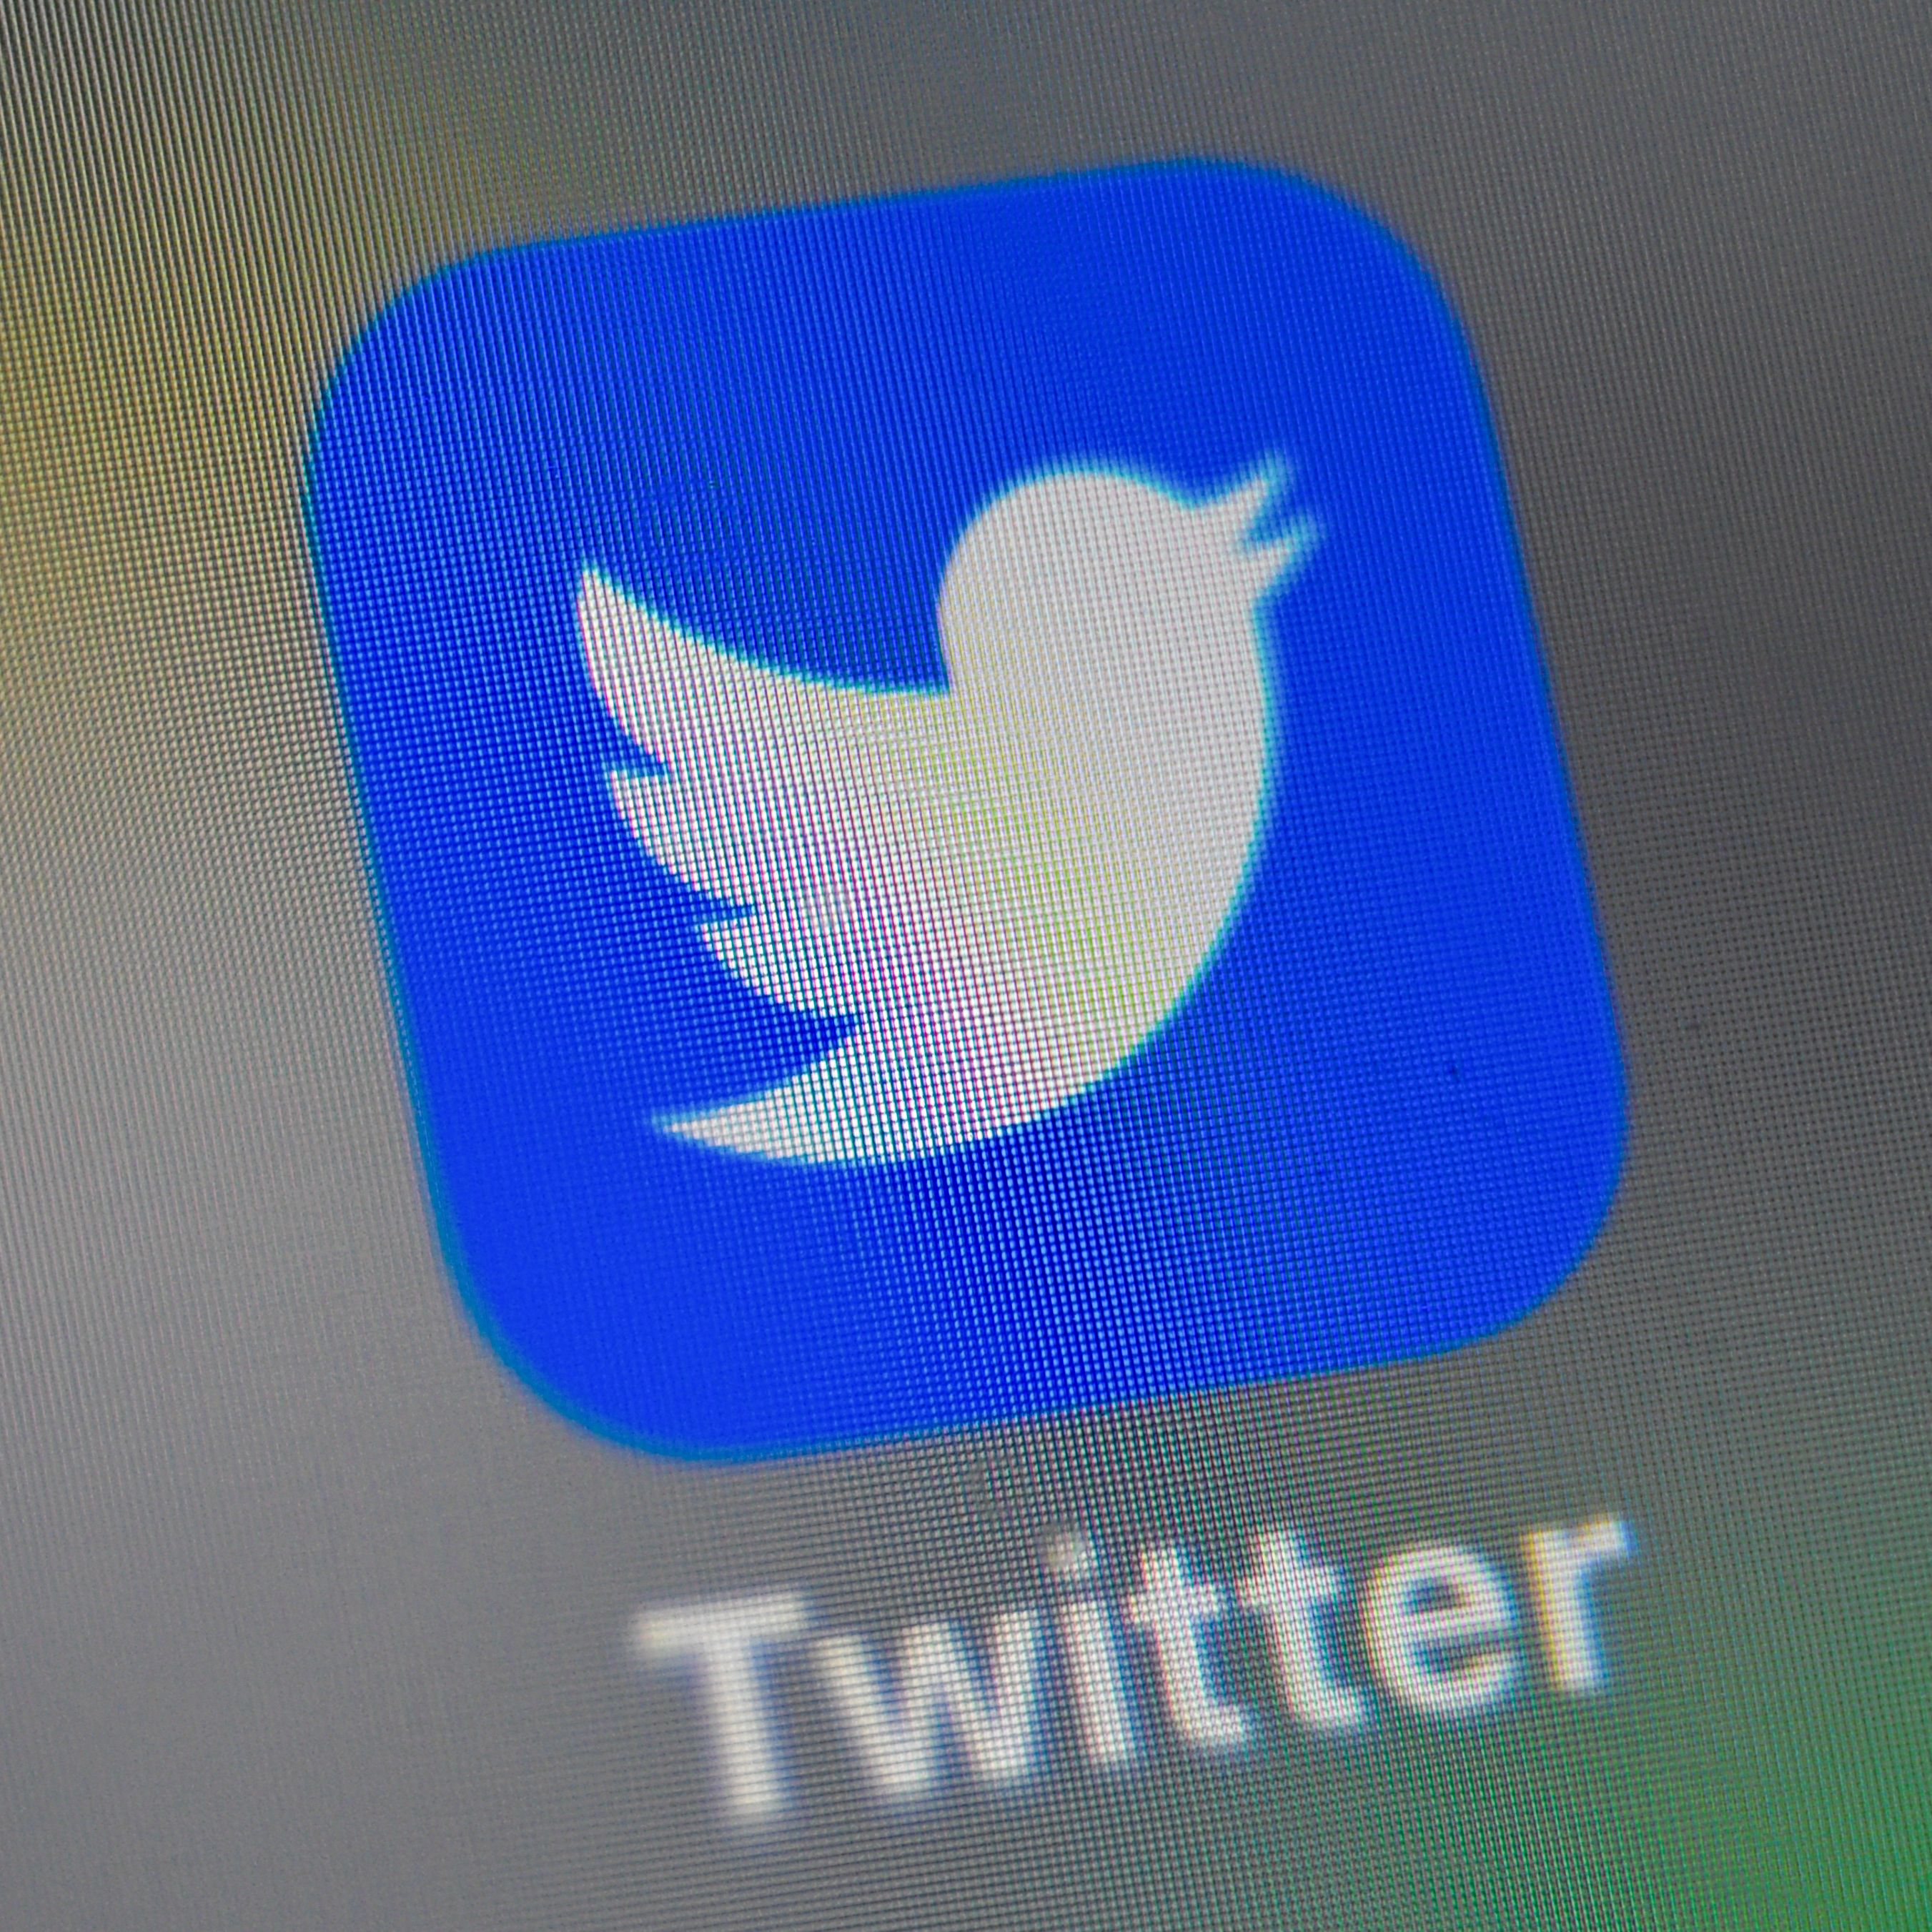 報告：600多假推特帳號散布中共宣傳